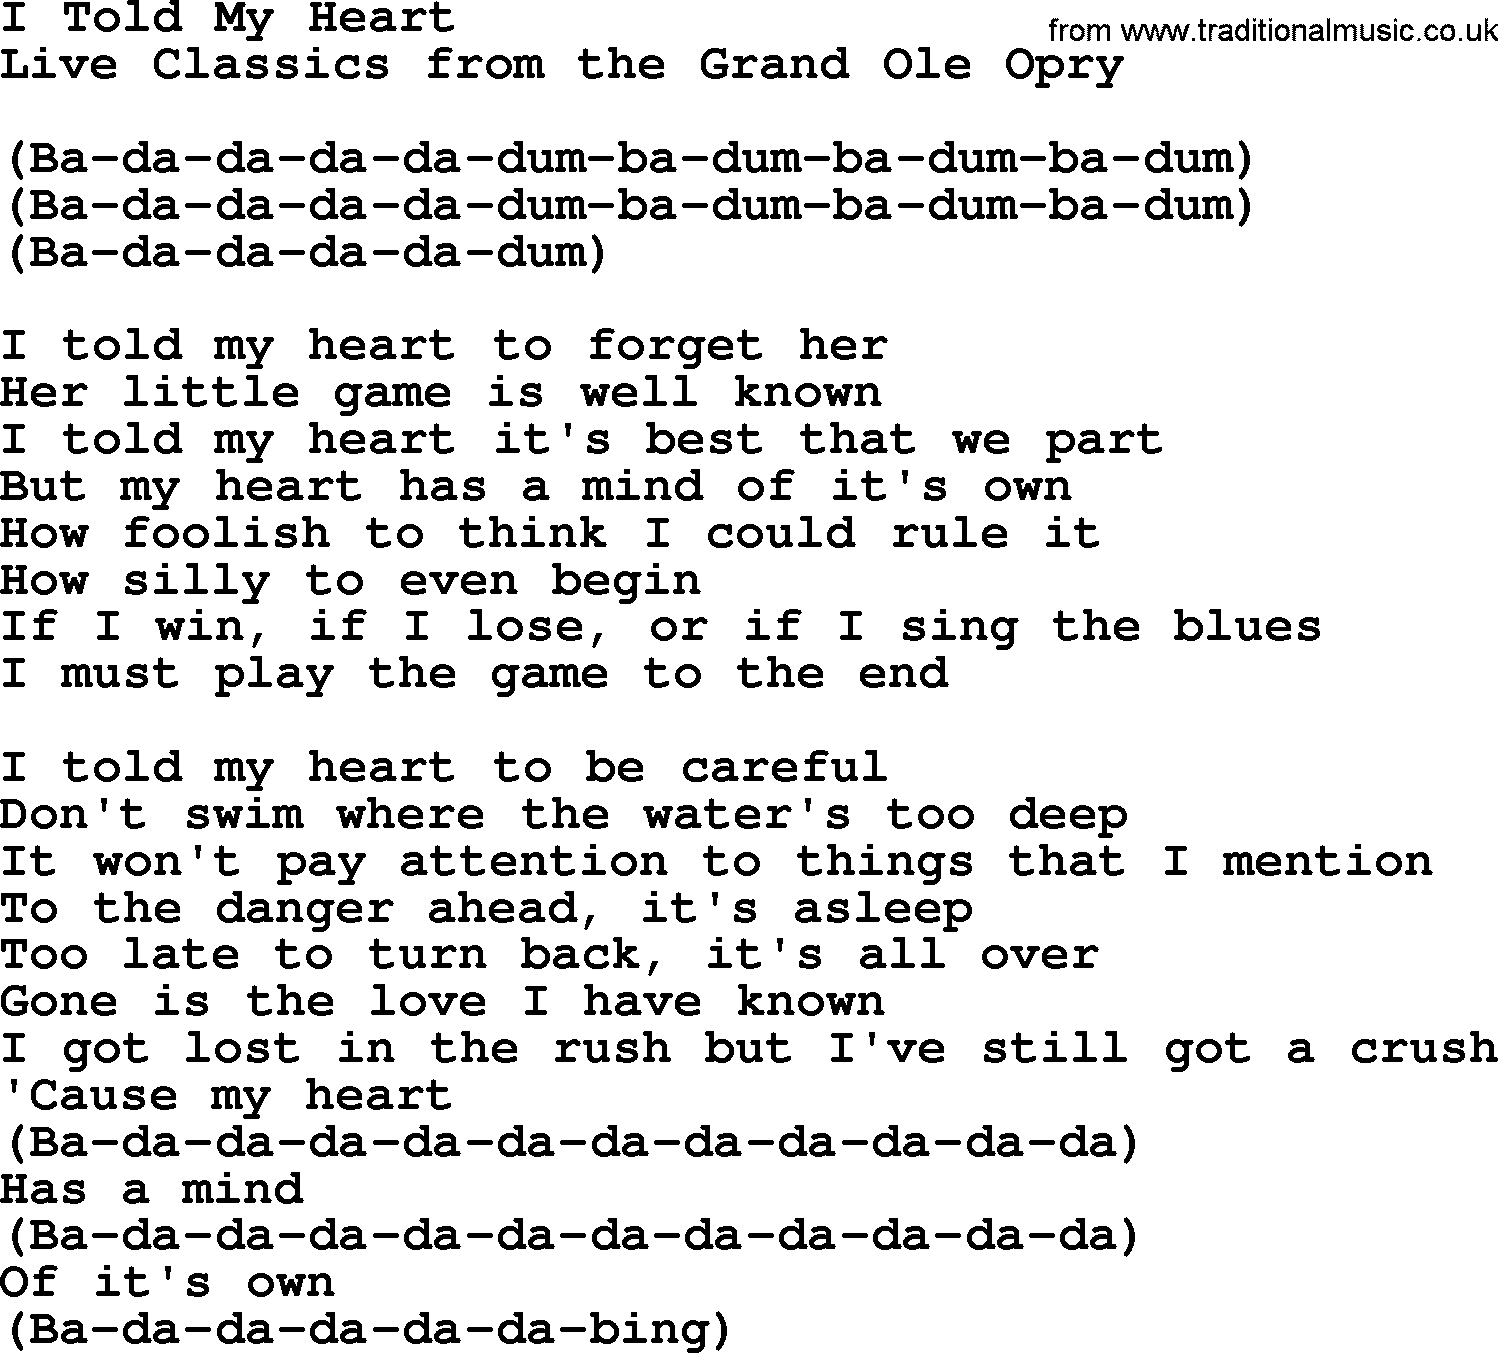 Marty Robbins song: I Told My Heart, lyrics